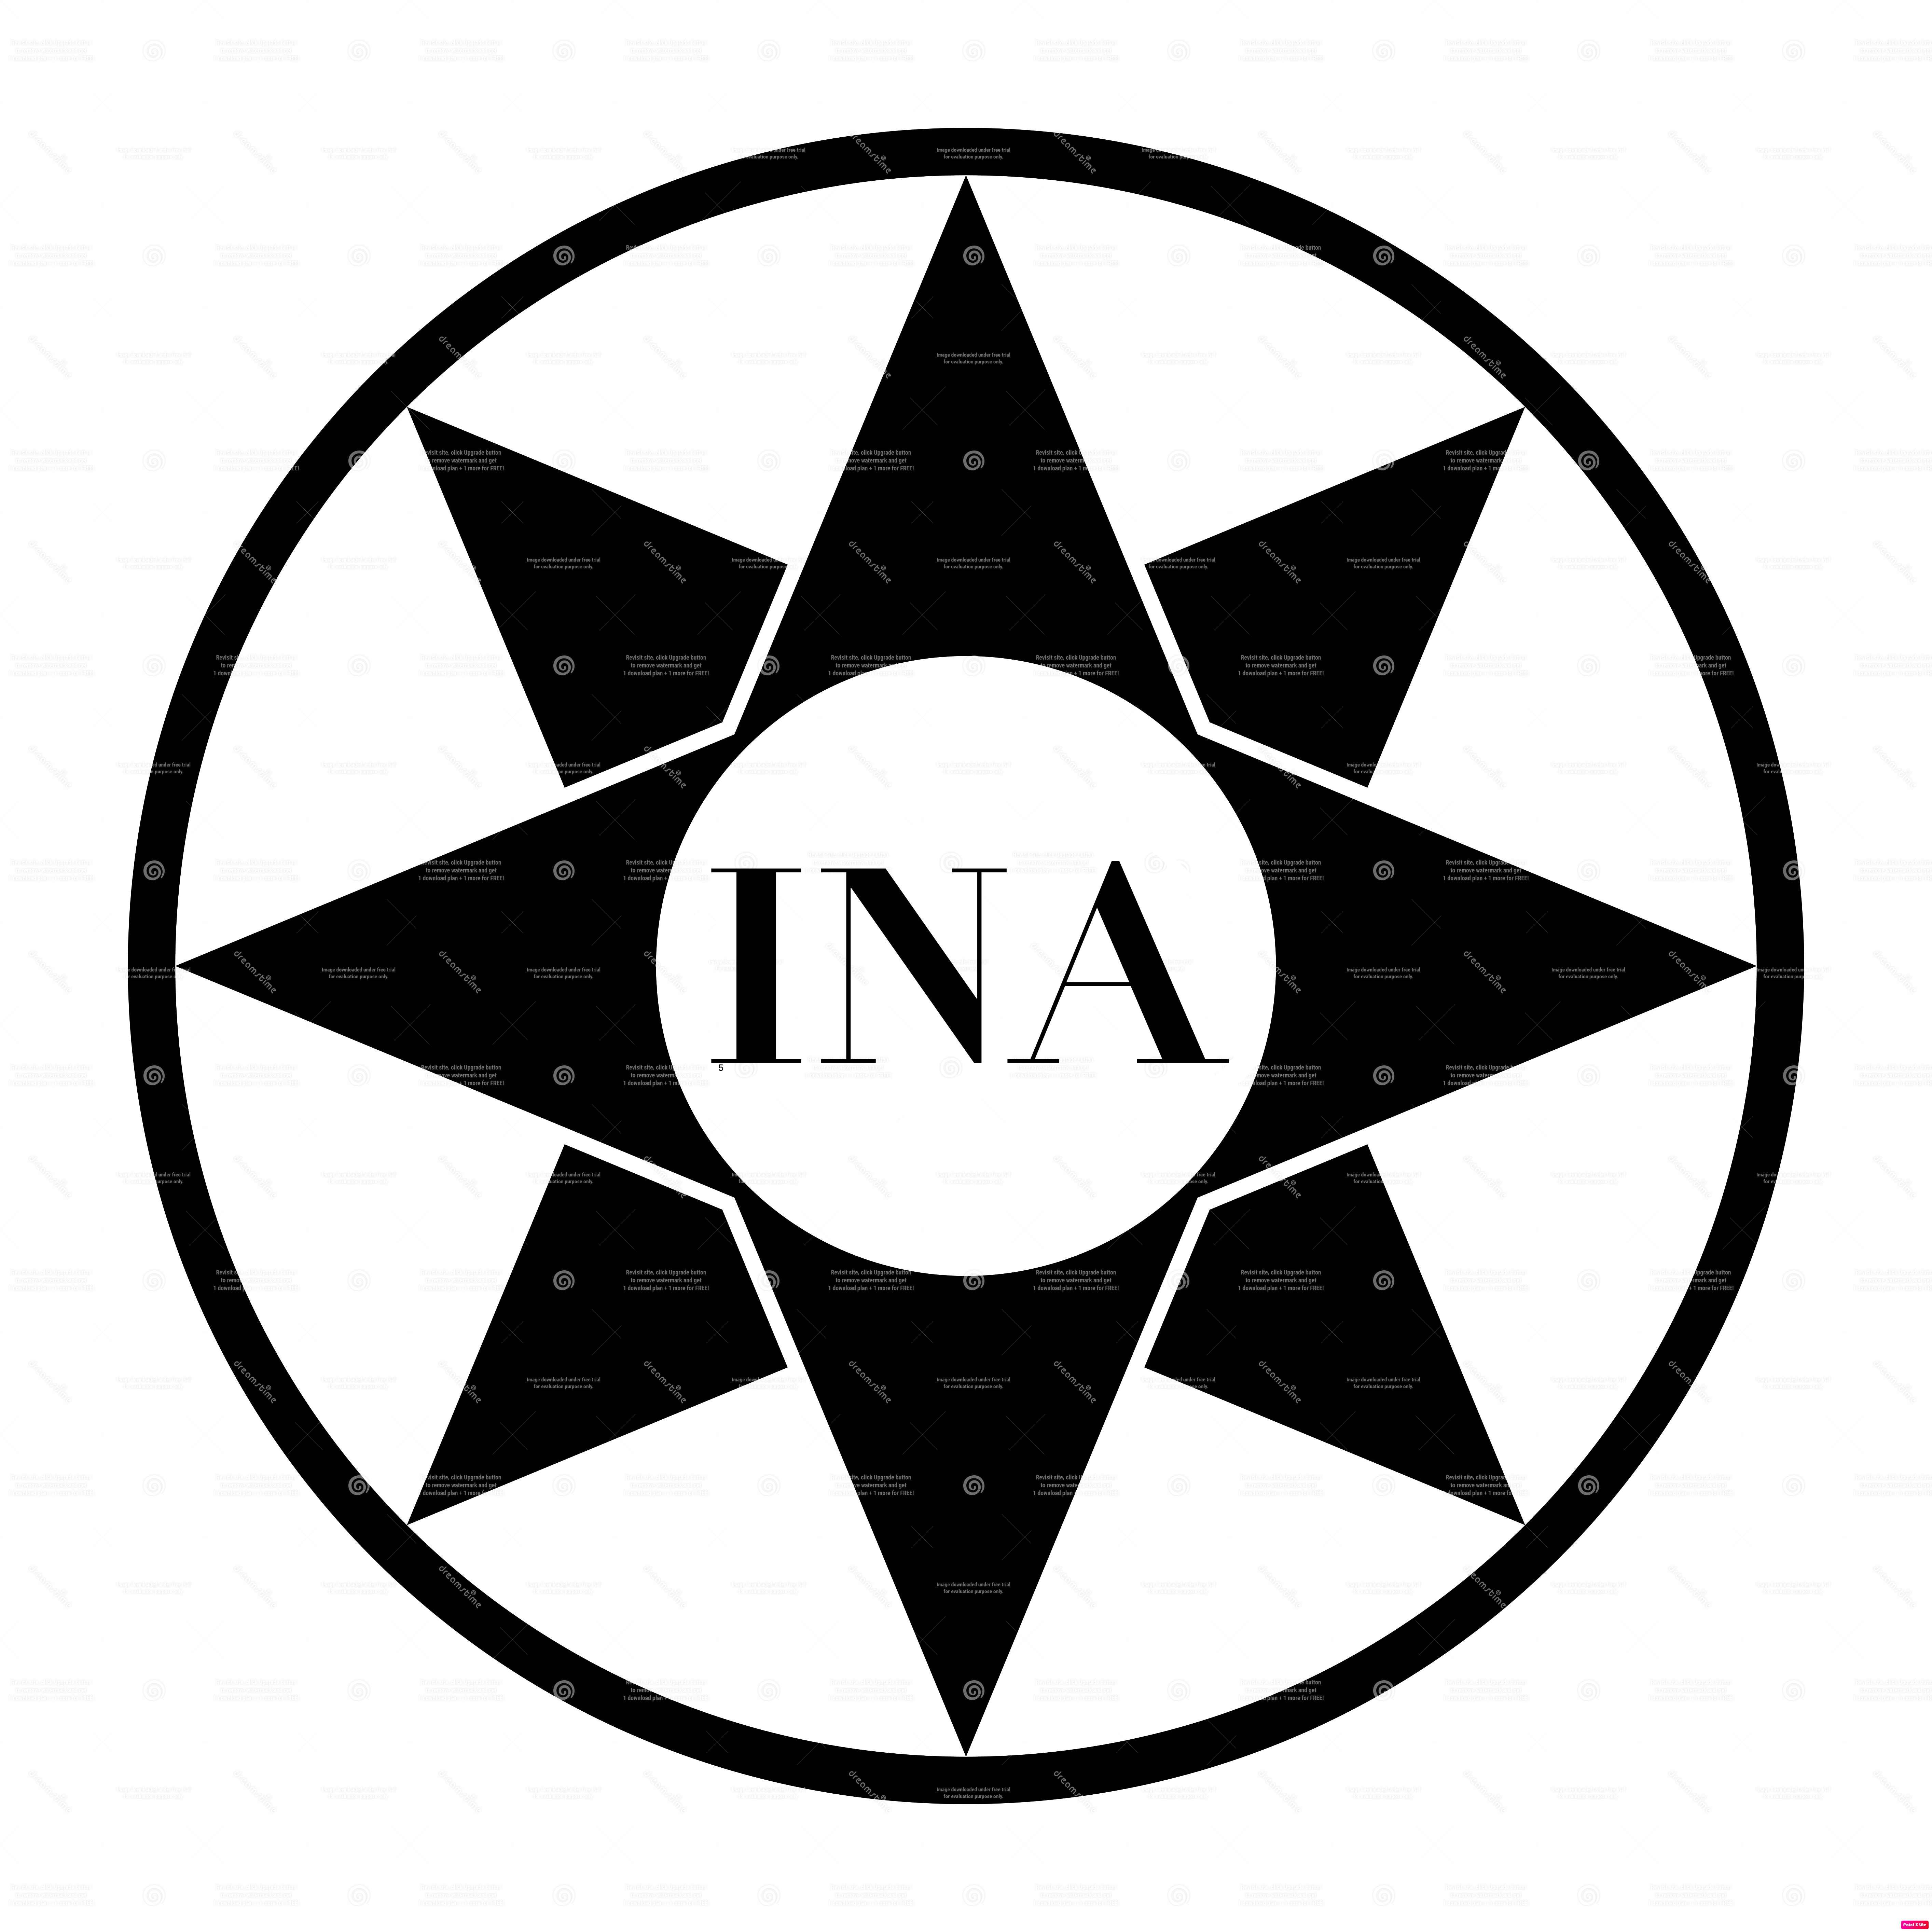 INA - Inanna